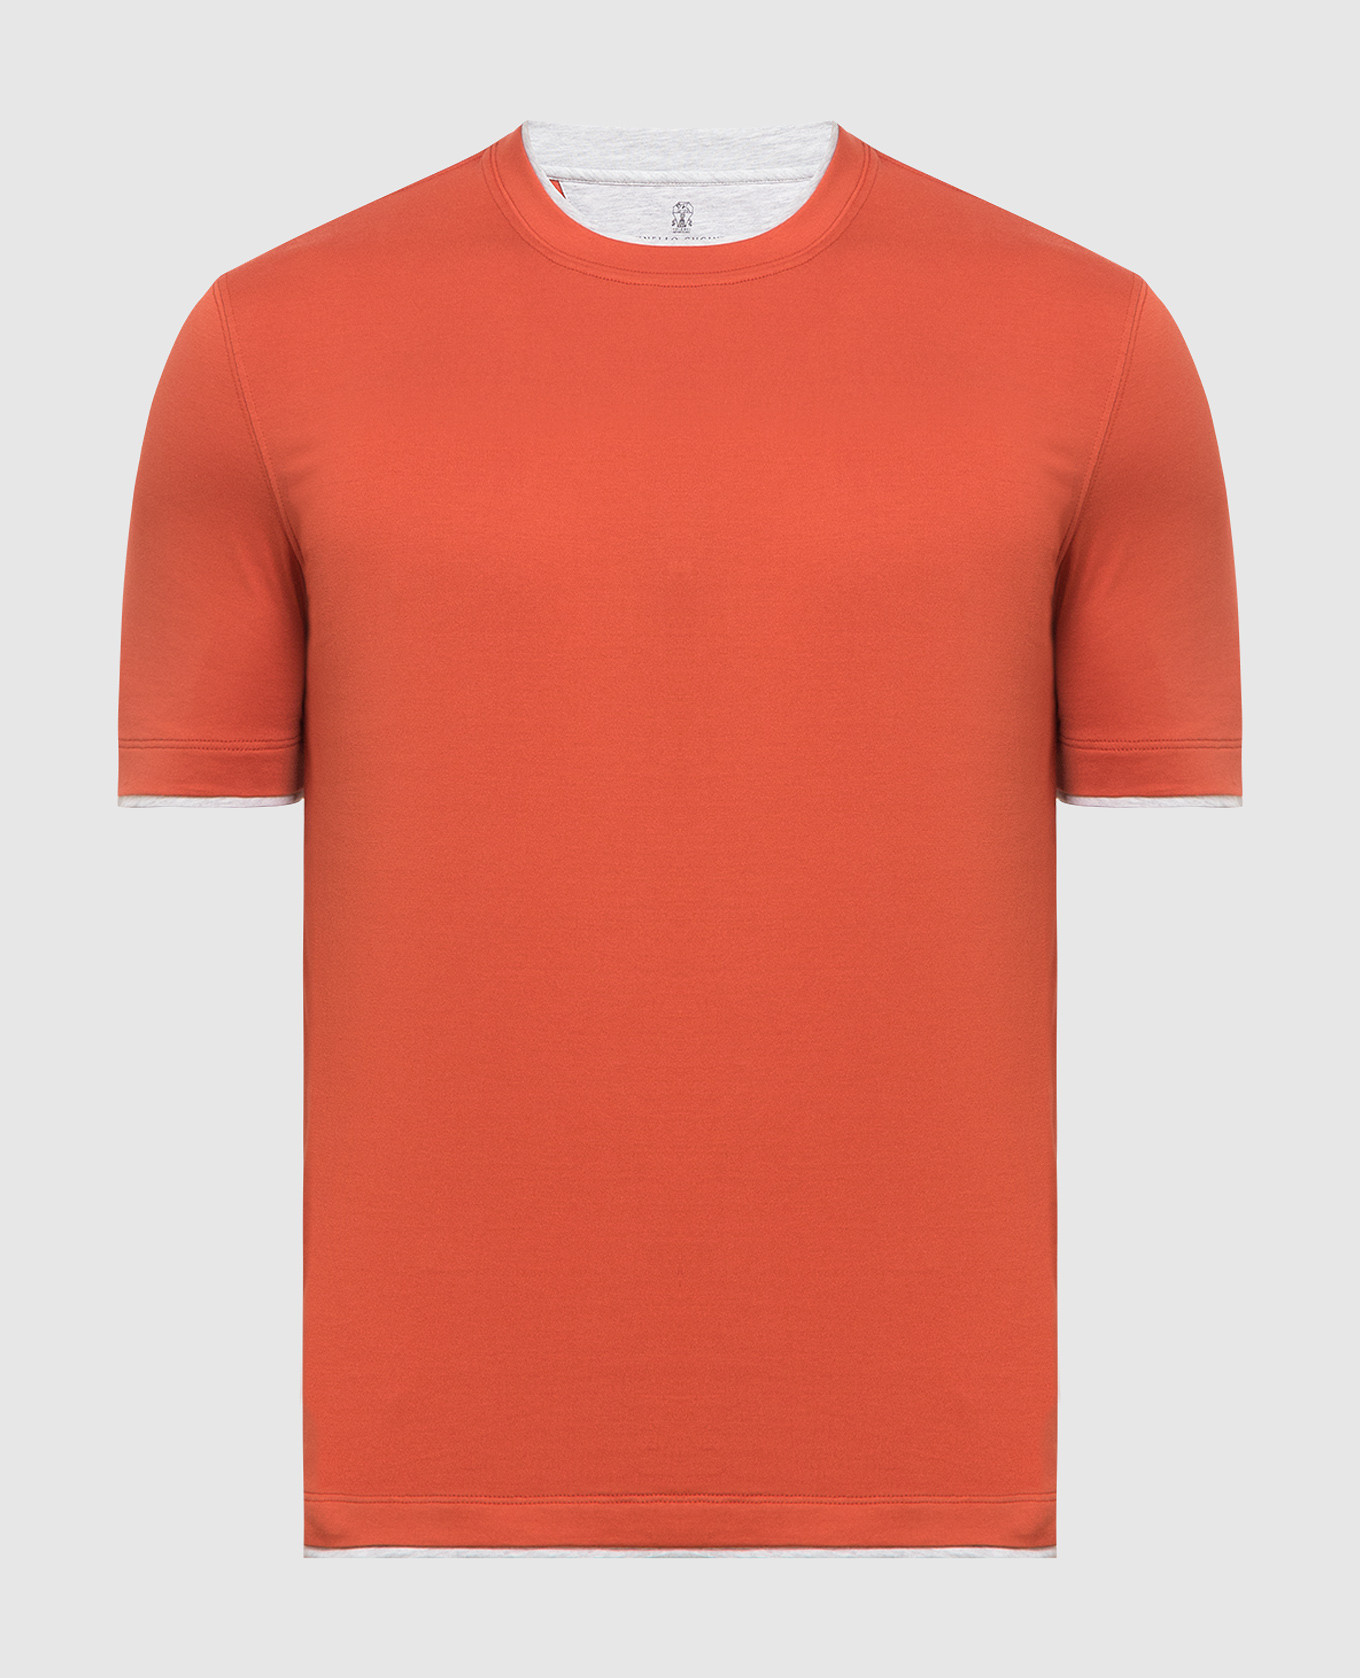 Оранжевая футболка с эффектом наложения слоев